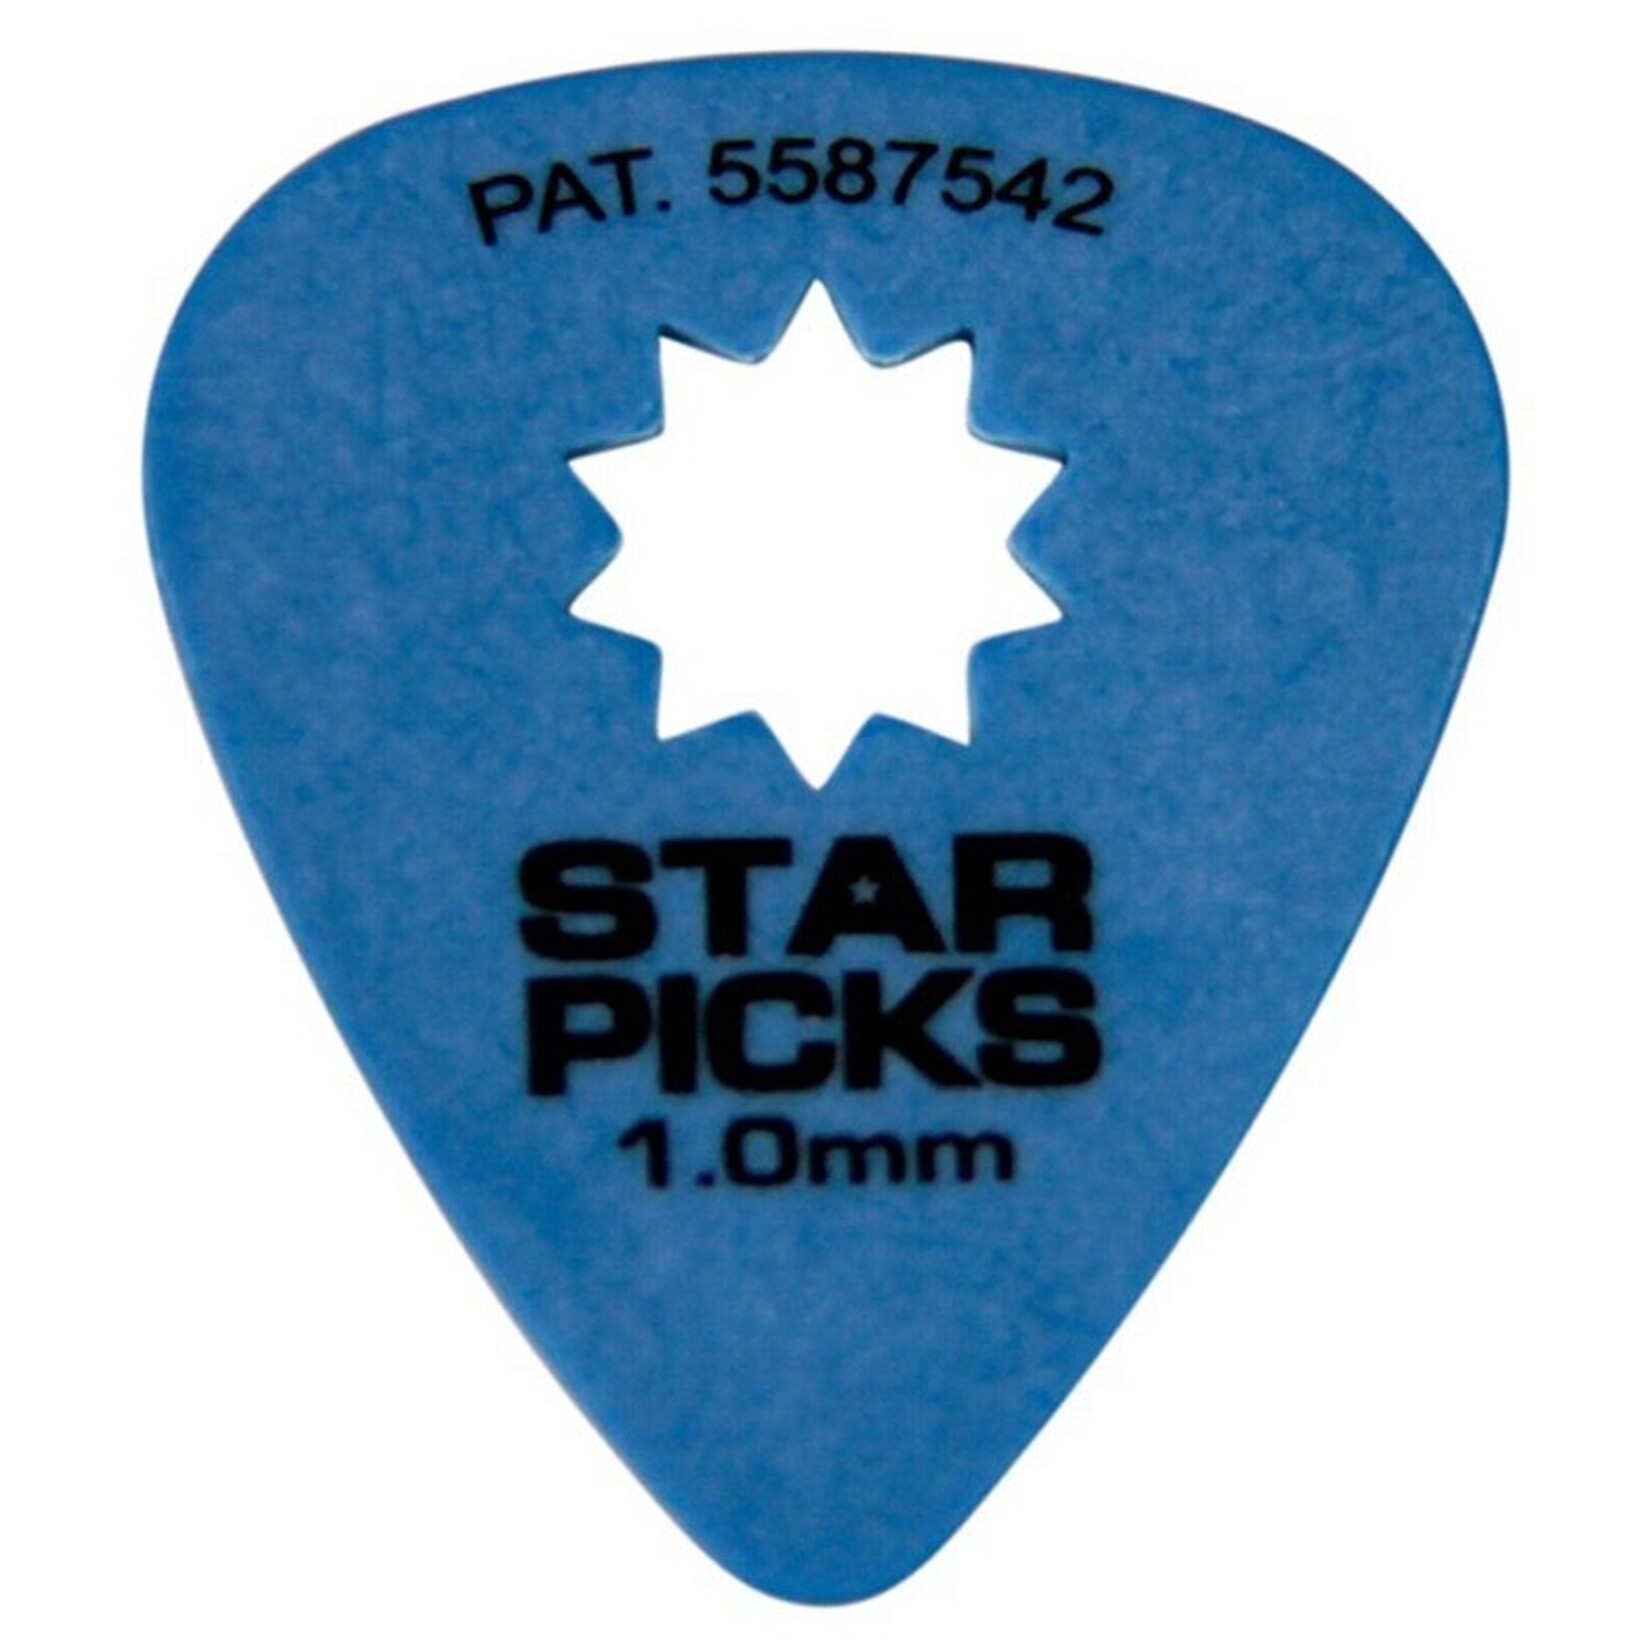 Star Picks 1.0mm Guitar Picks 12 Pack - Blue